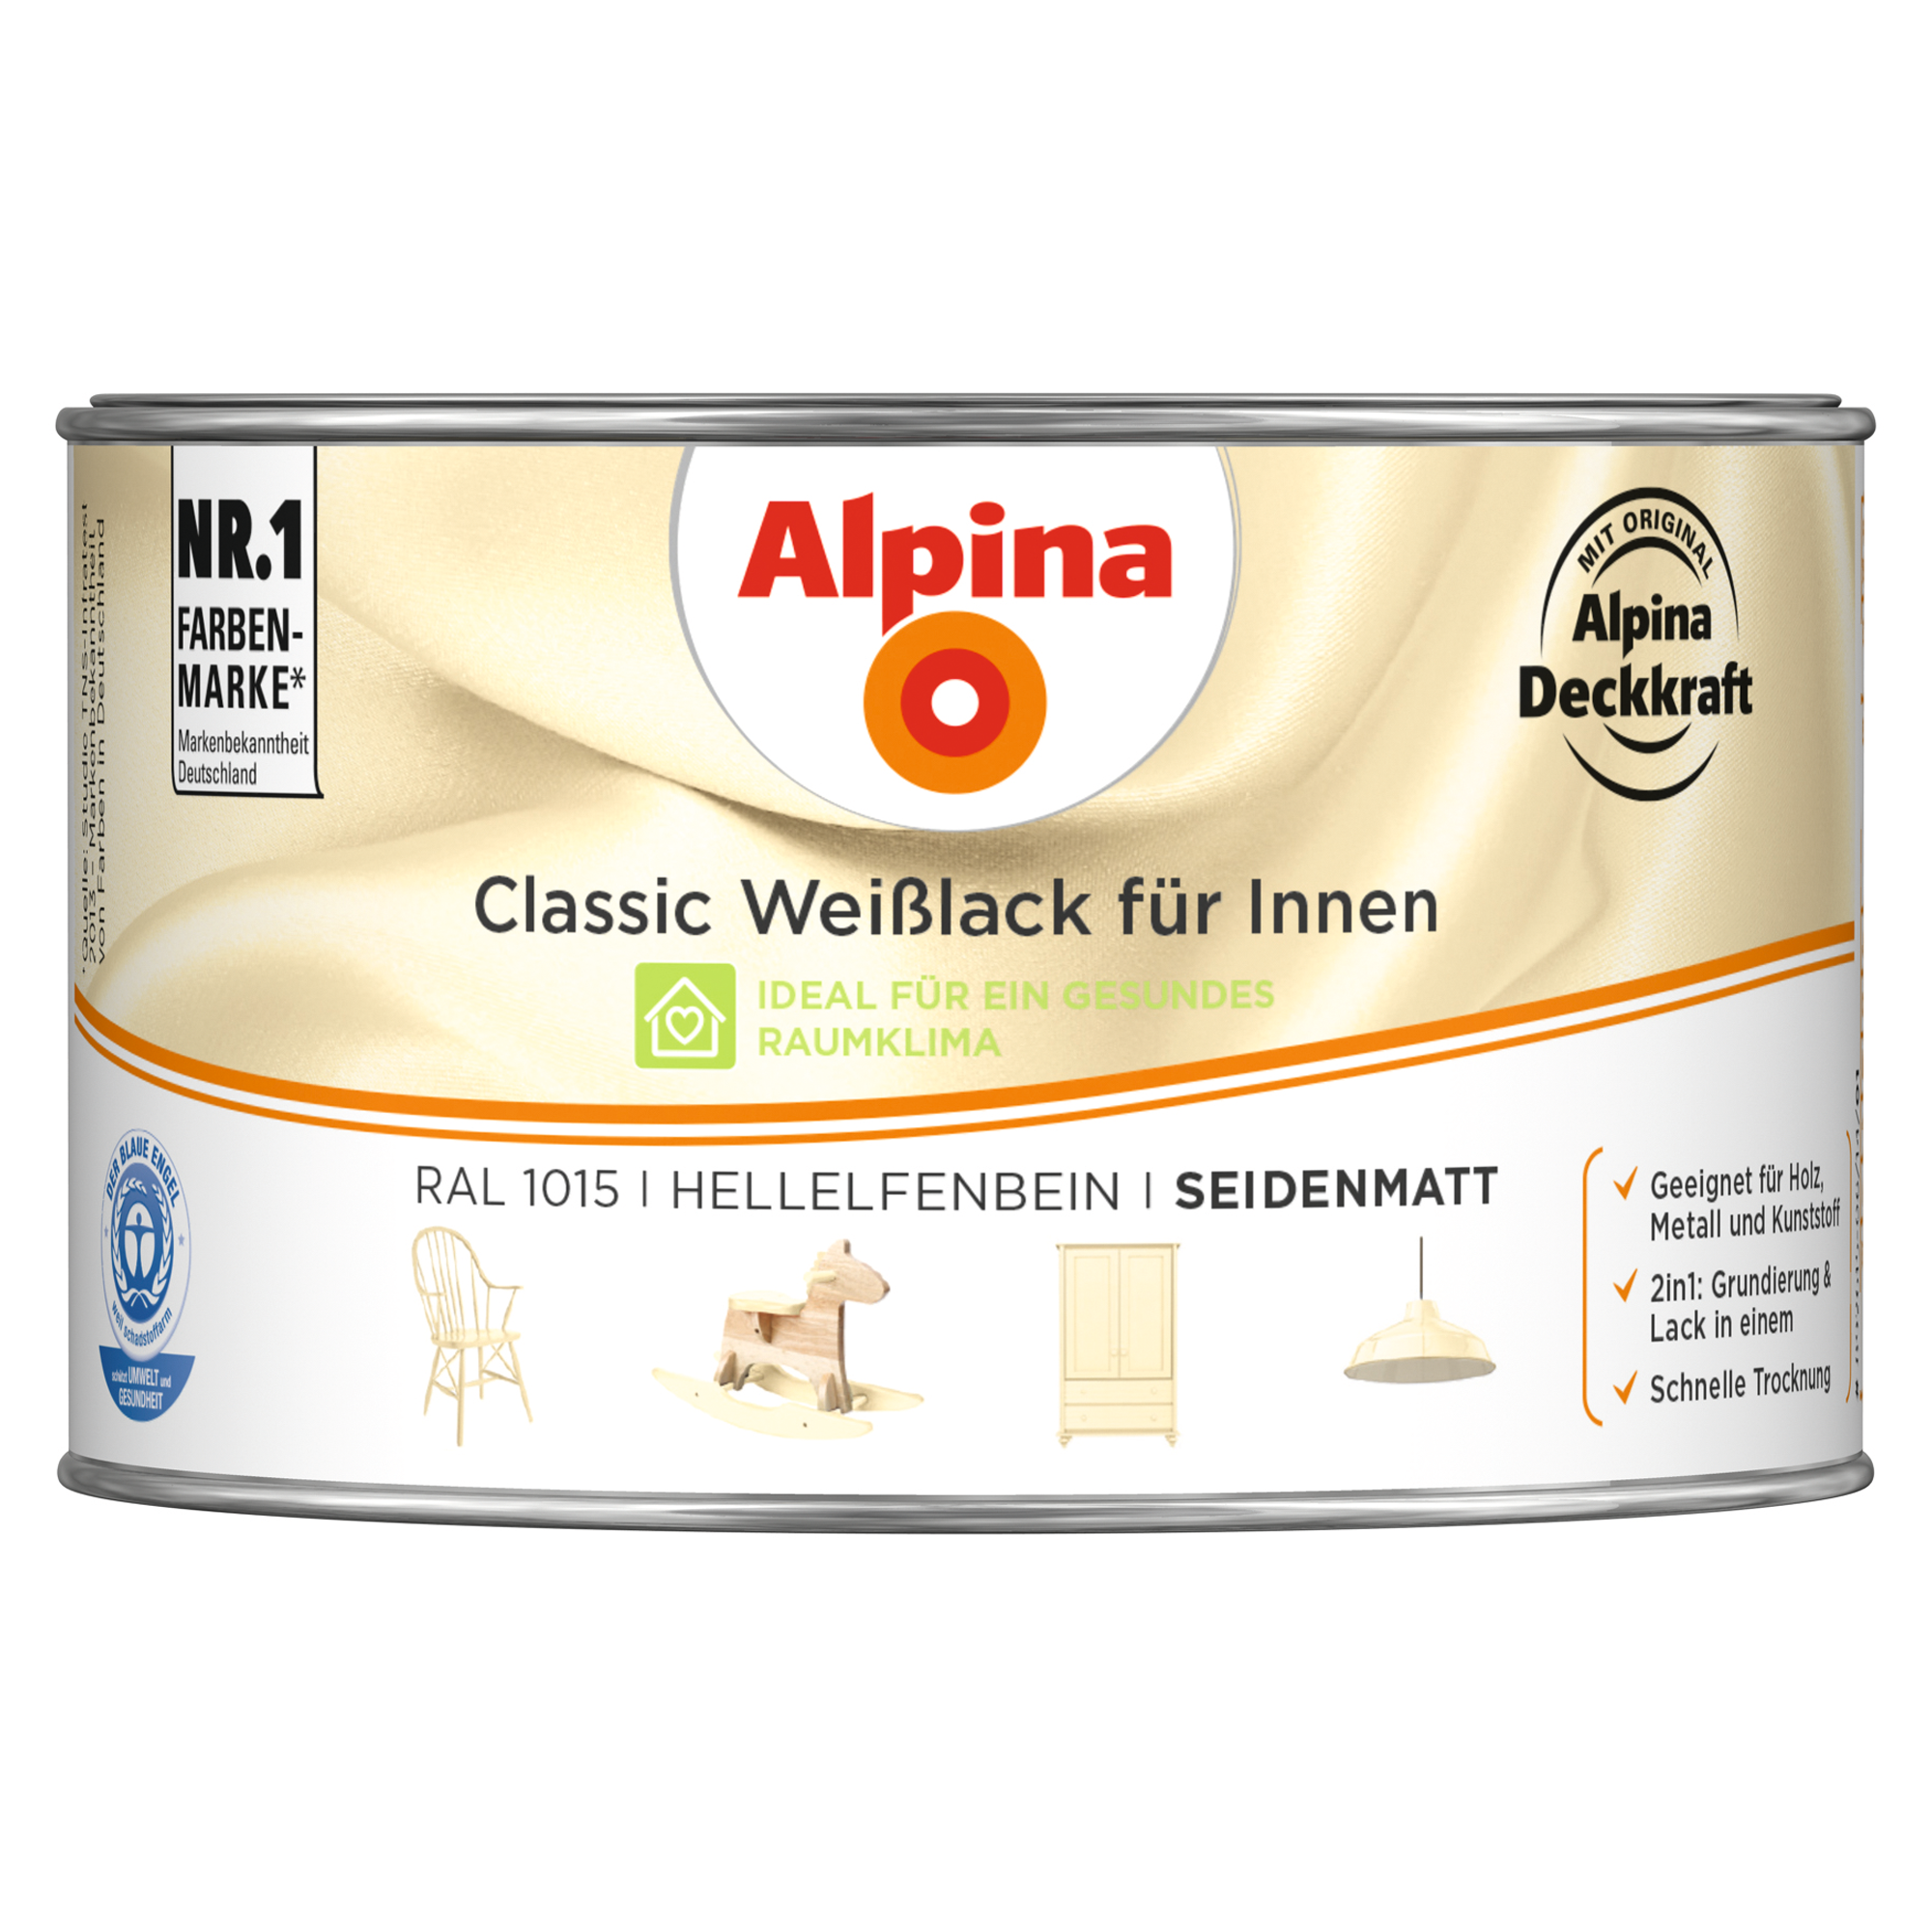 Weißlack für Innen elfenbeinfarben seidenmatt 300 ml + product picture